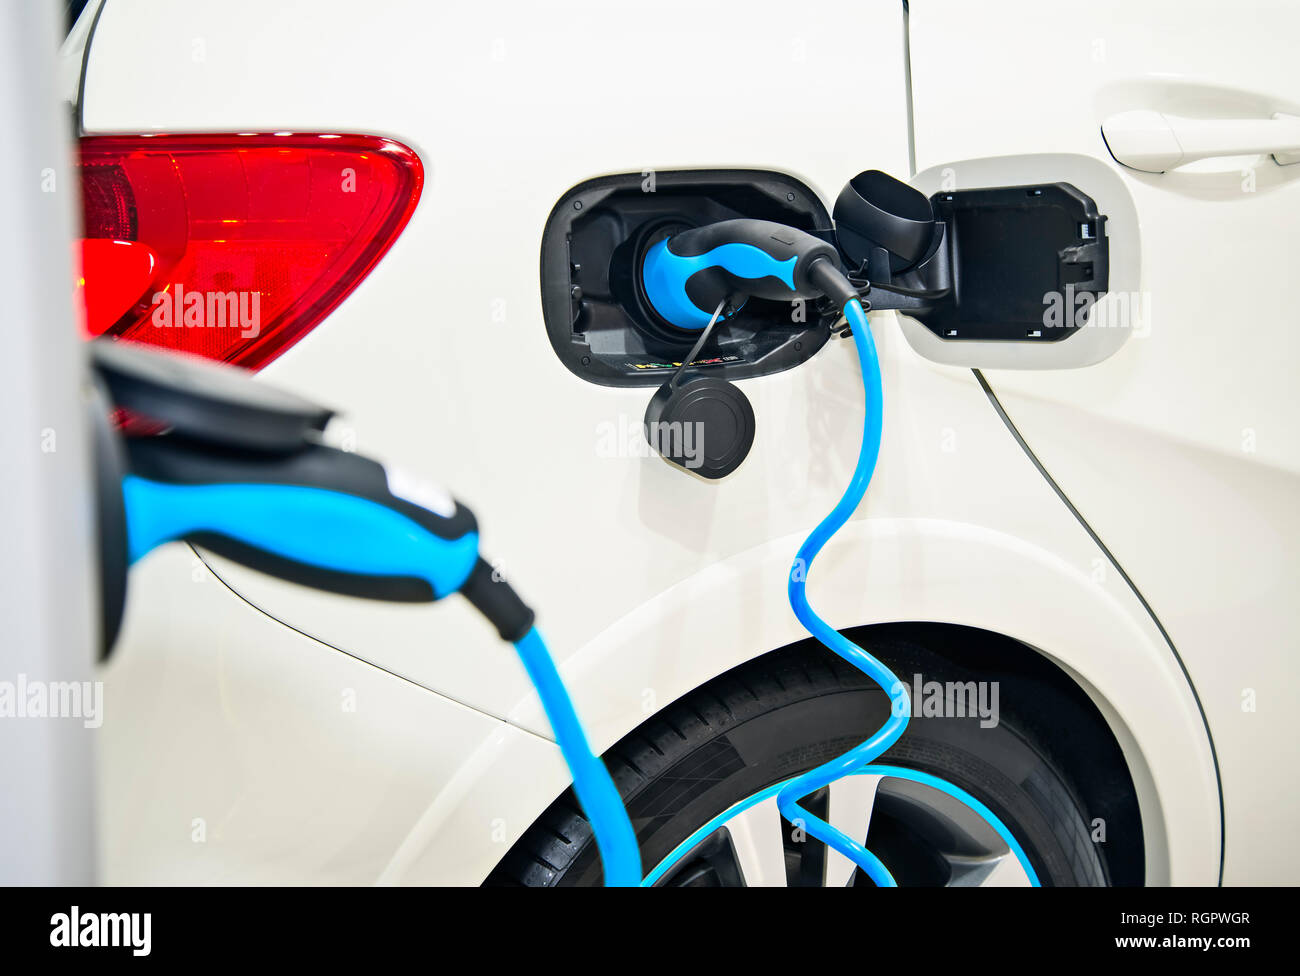 Dettaglio di un auto elettrica con tappo blu Foto Stock